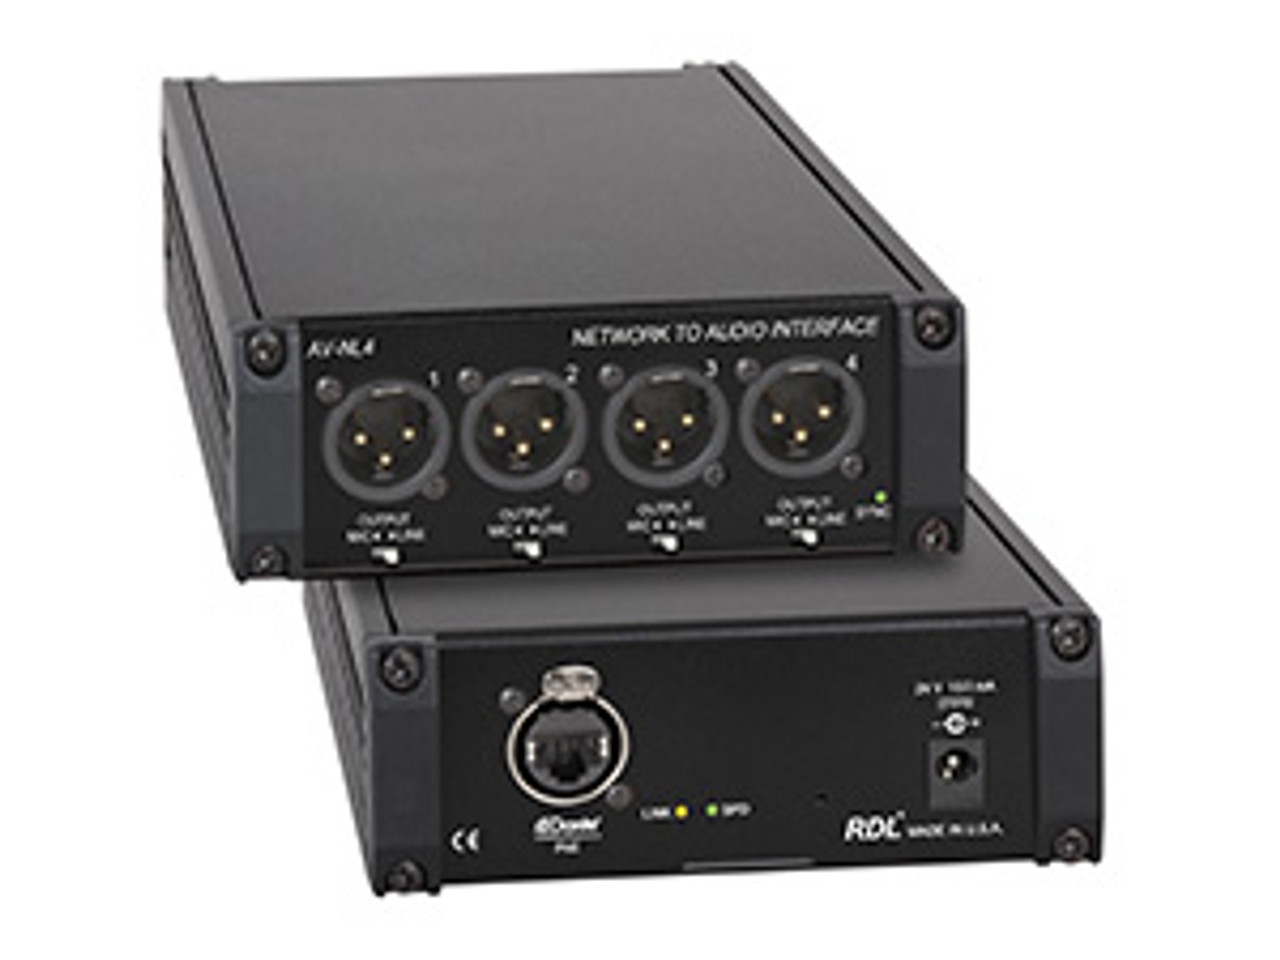 RDL AV-NL4 Network to Audio Interface (AV-NL4)